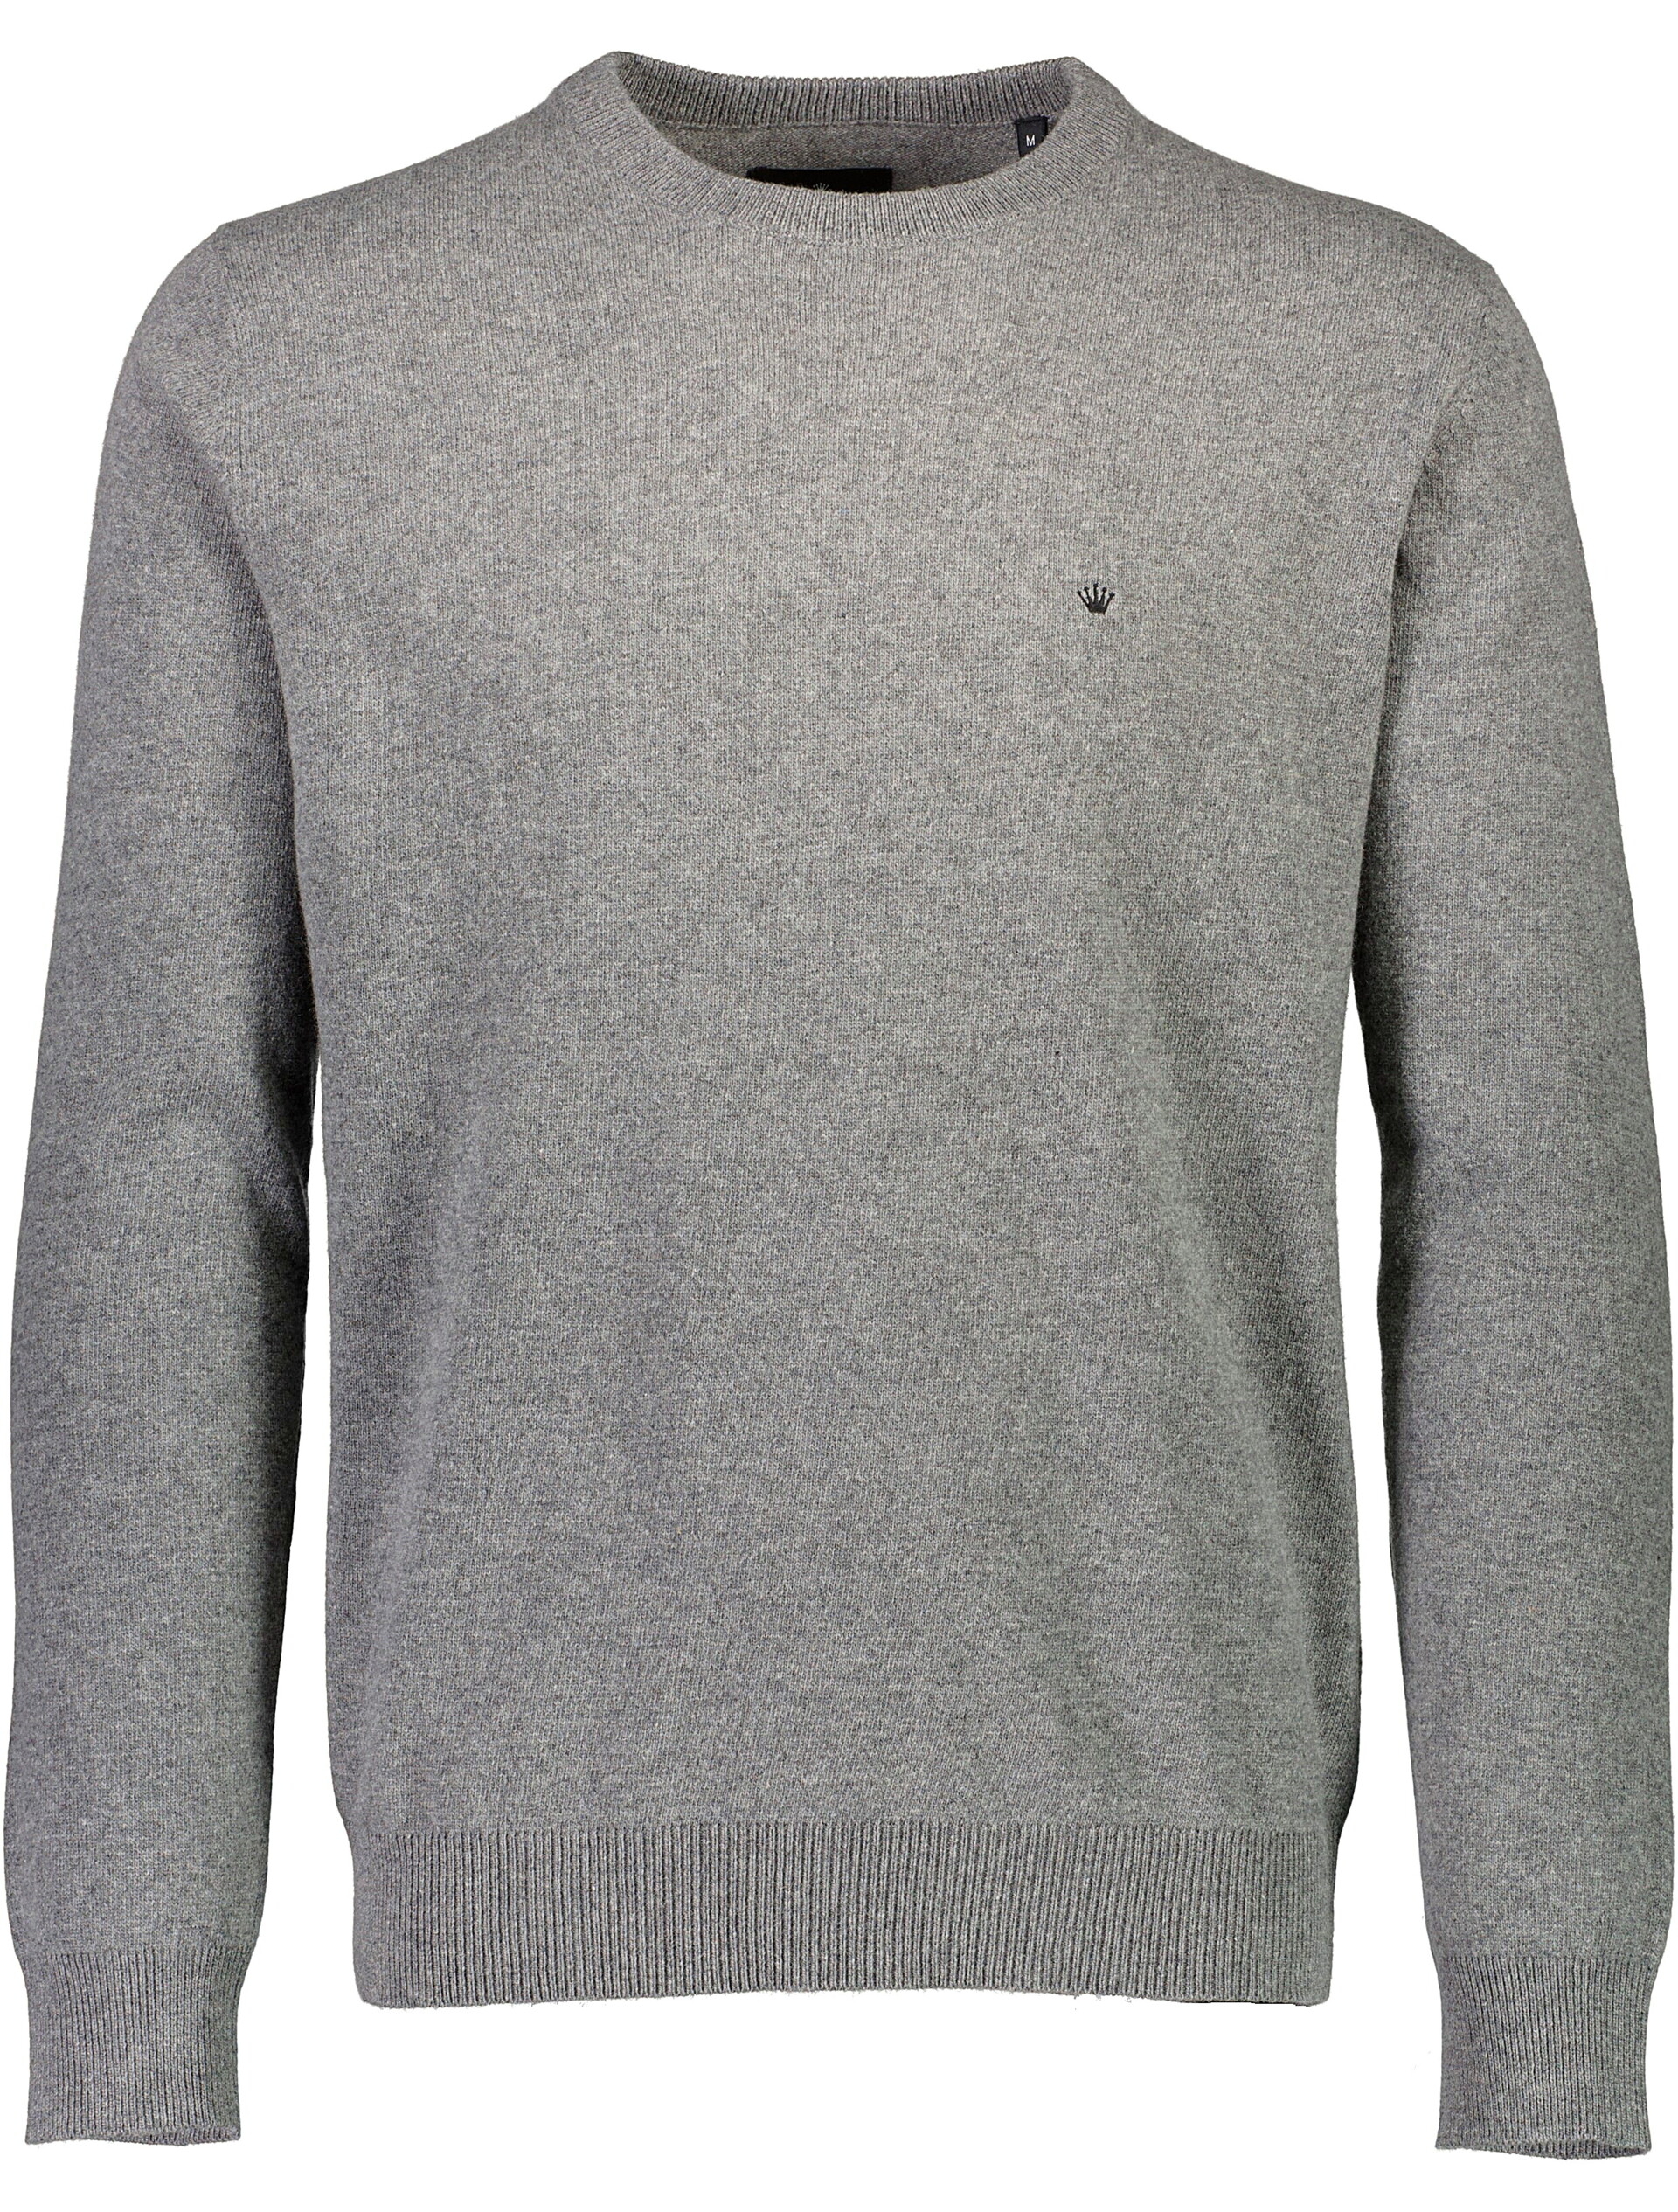 Junk de Luxe Knitwear grey / grey mel